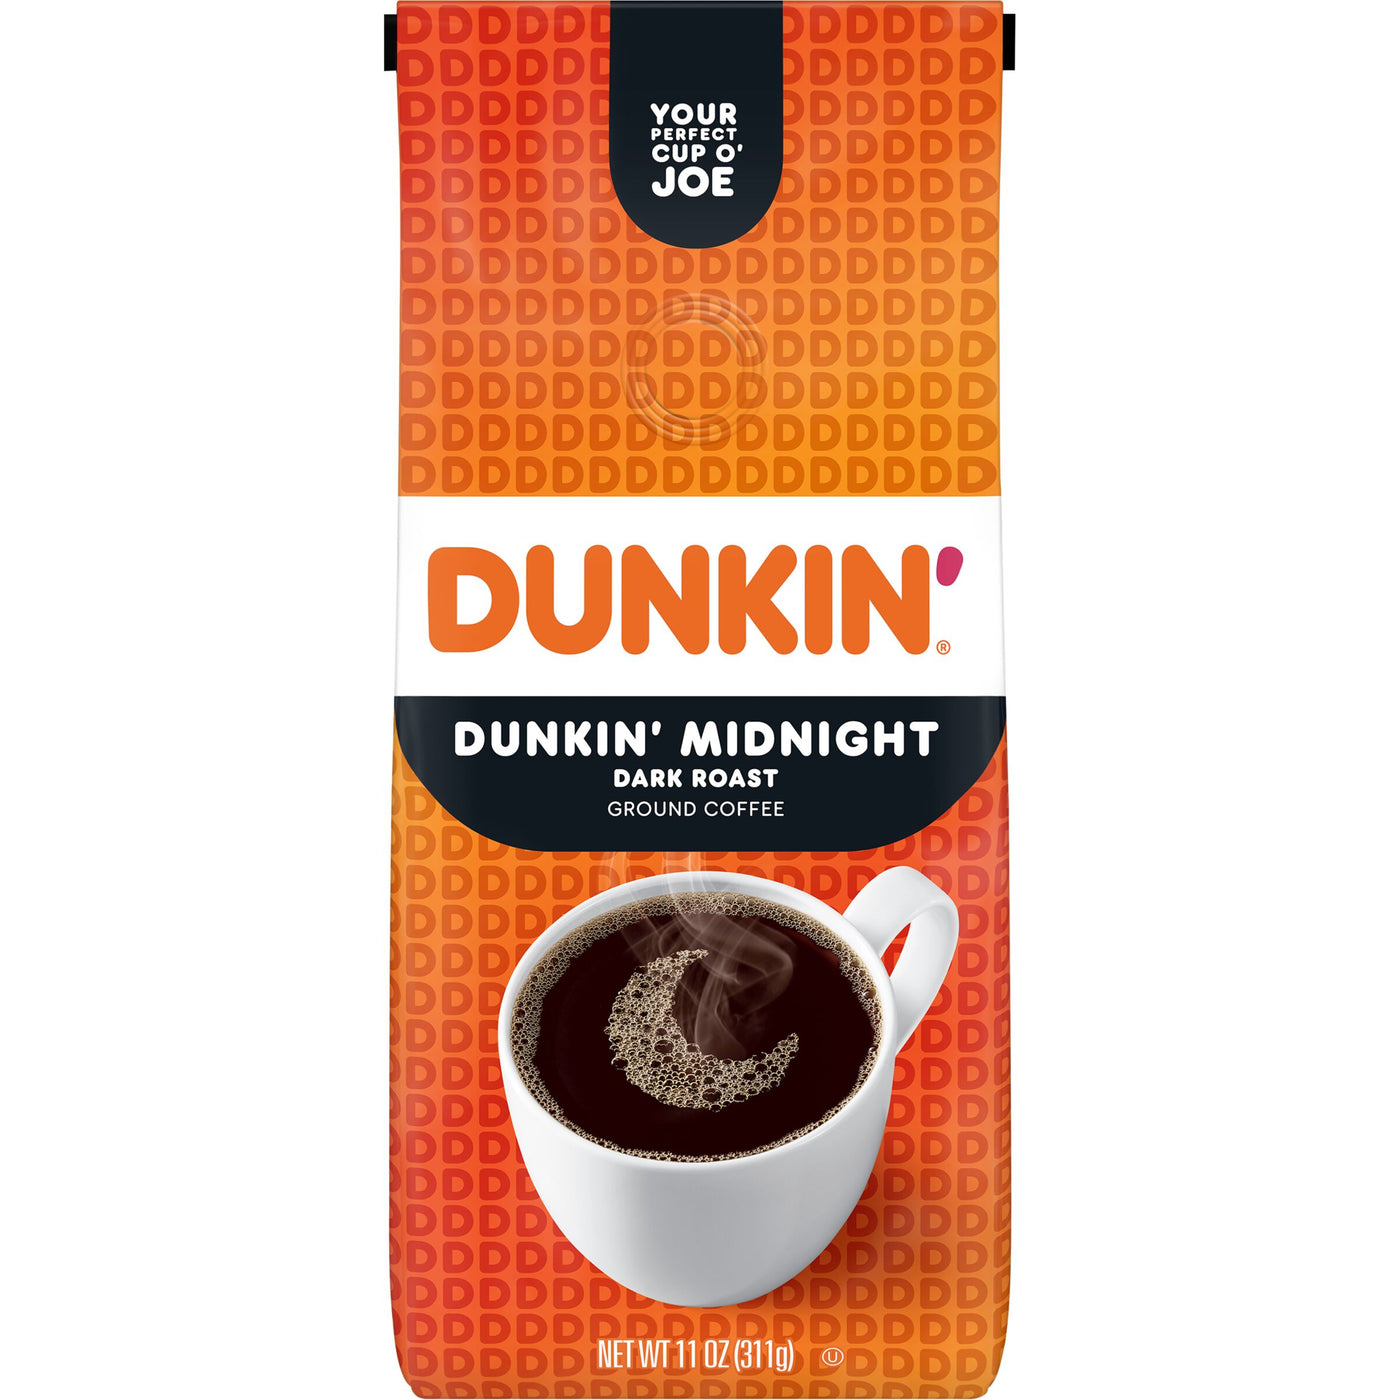 Dunkin' Midnight Dark Roast Ground Coffee